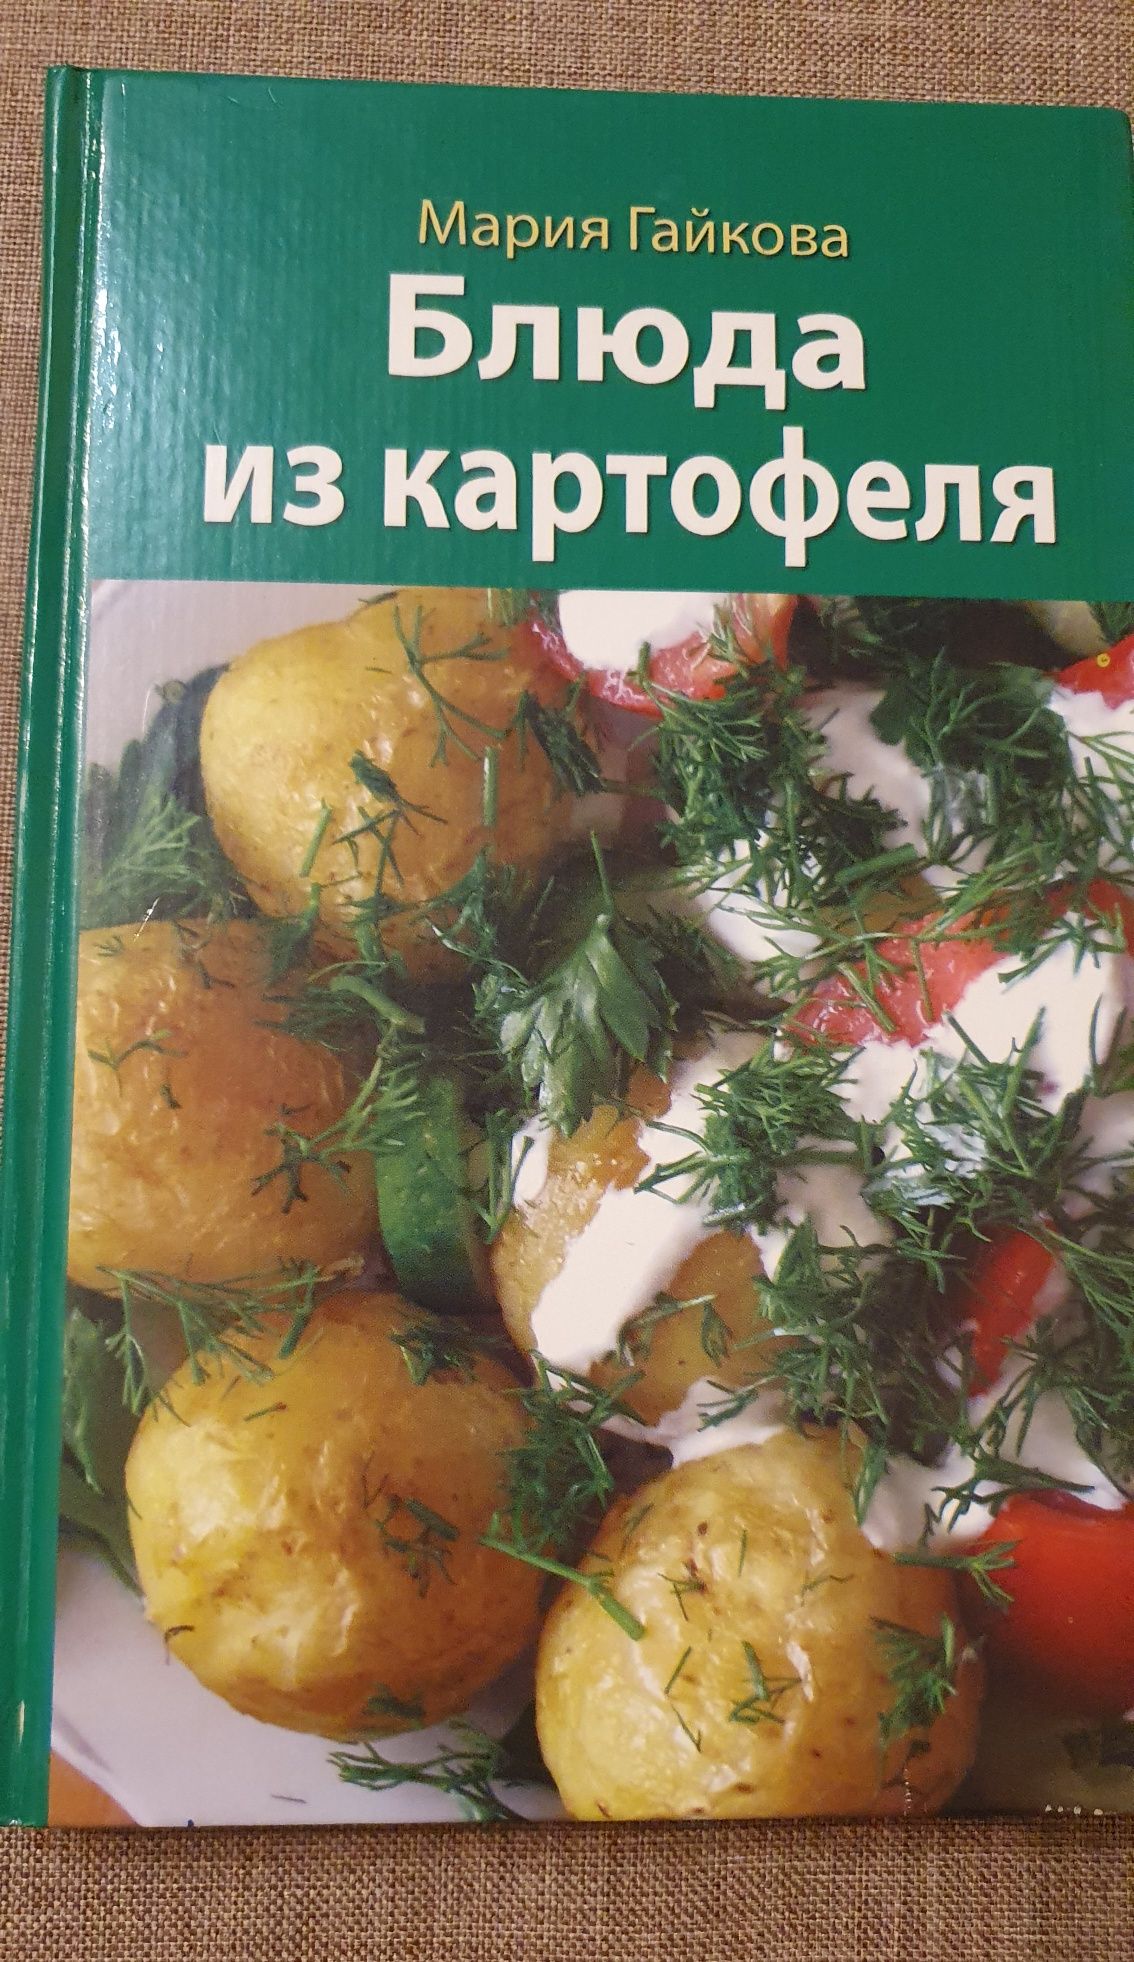 Блюда из картофеля (рос) 2005 р. 158 сторінок